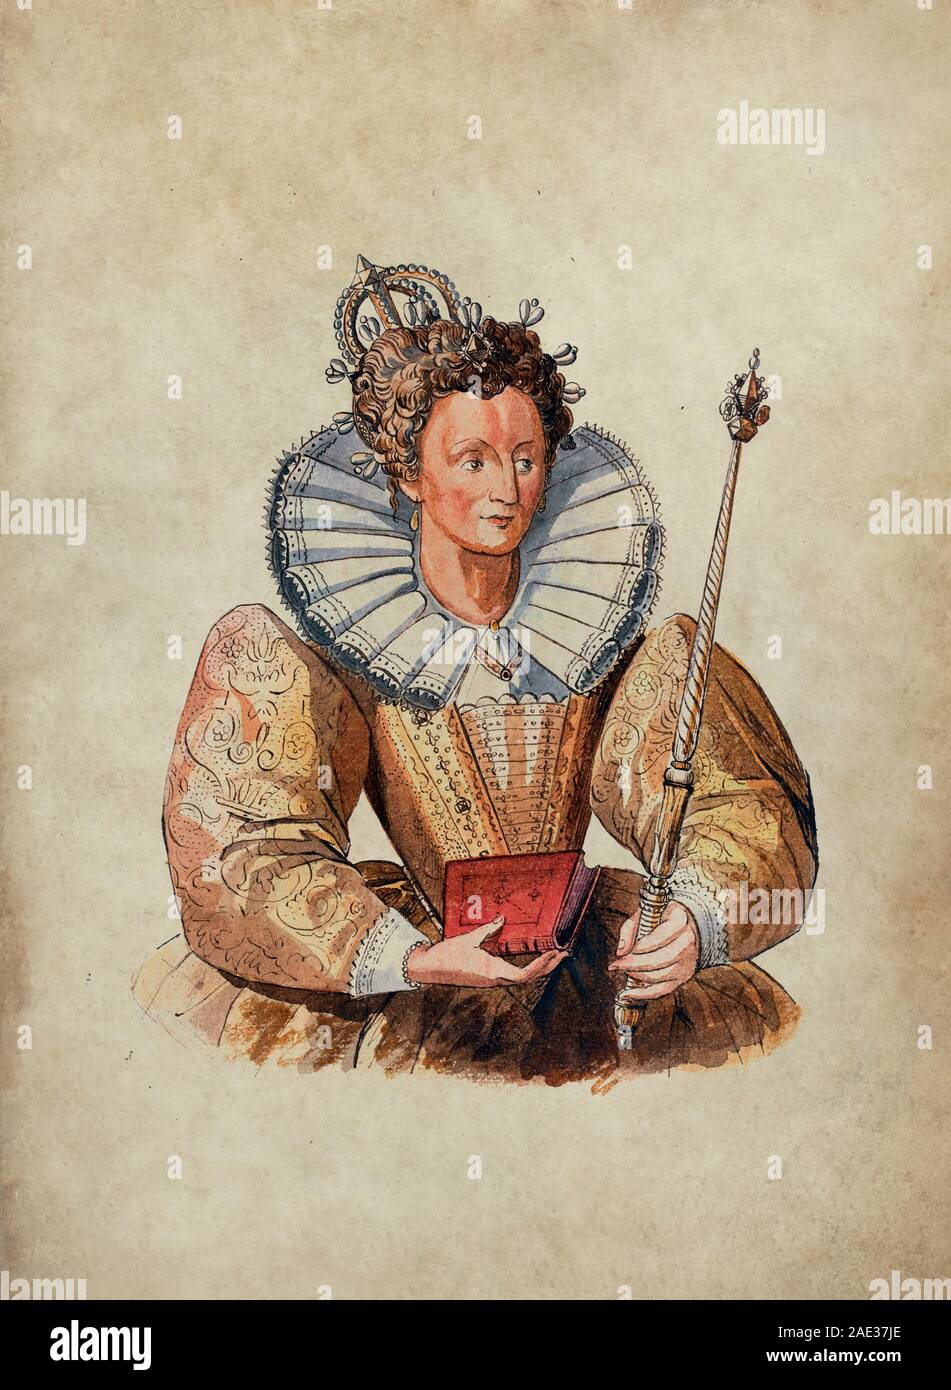 Bild von Elizabeth I (1533-1603), Königin von England und Irland. Manchmal ist die jungfräuliche Königin Gloriana oder Good Queen Bess, Elizabeth war der Stockfoto